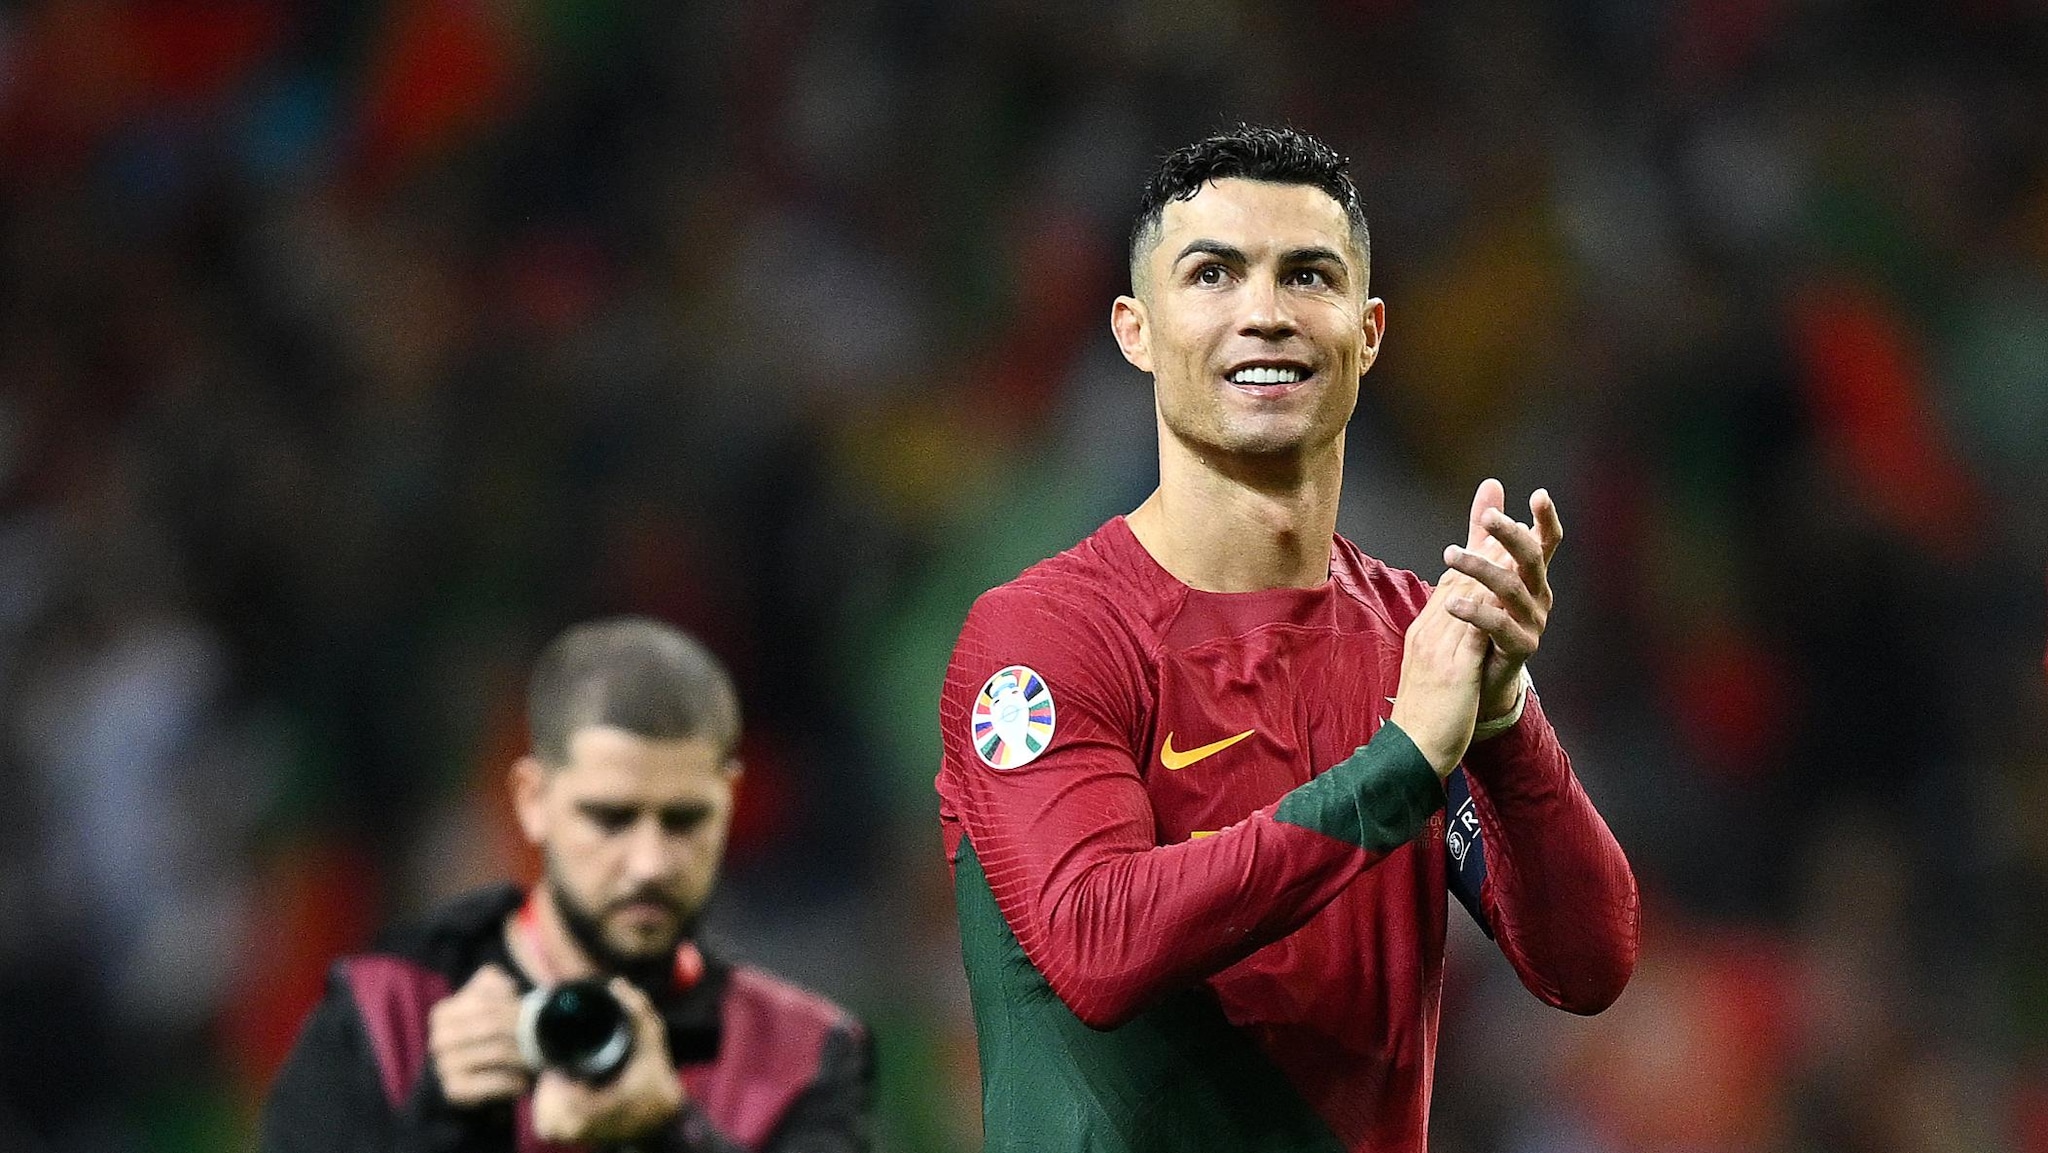 Cristiano Ronaldo: Maior artilheiro de todos os tempos do futebol internacional masculino |  Torneios de qualificação europeus